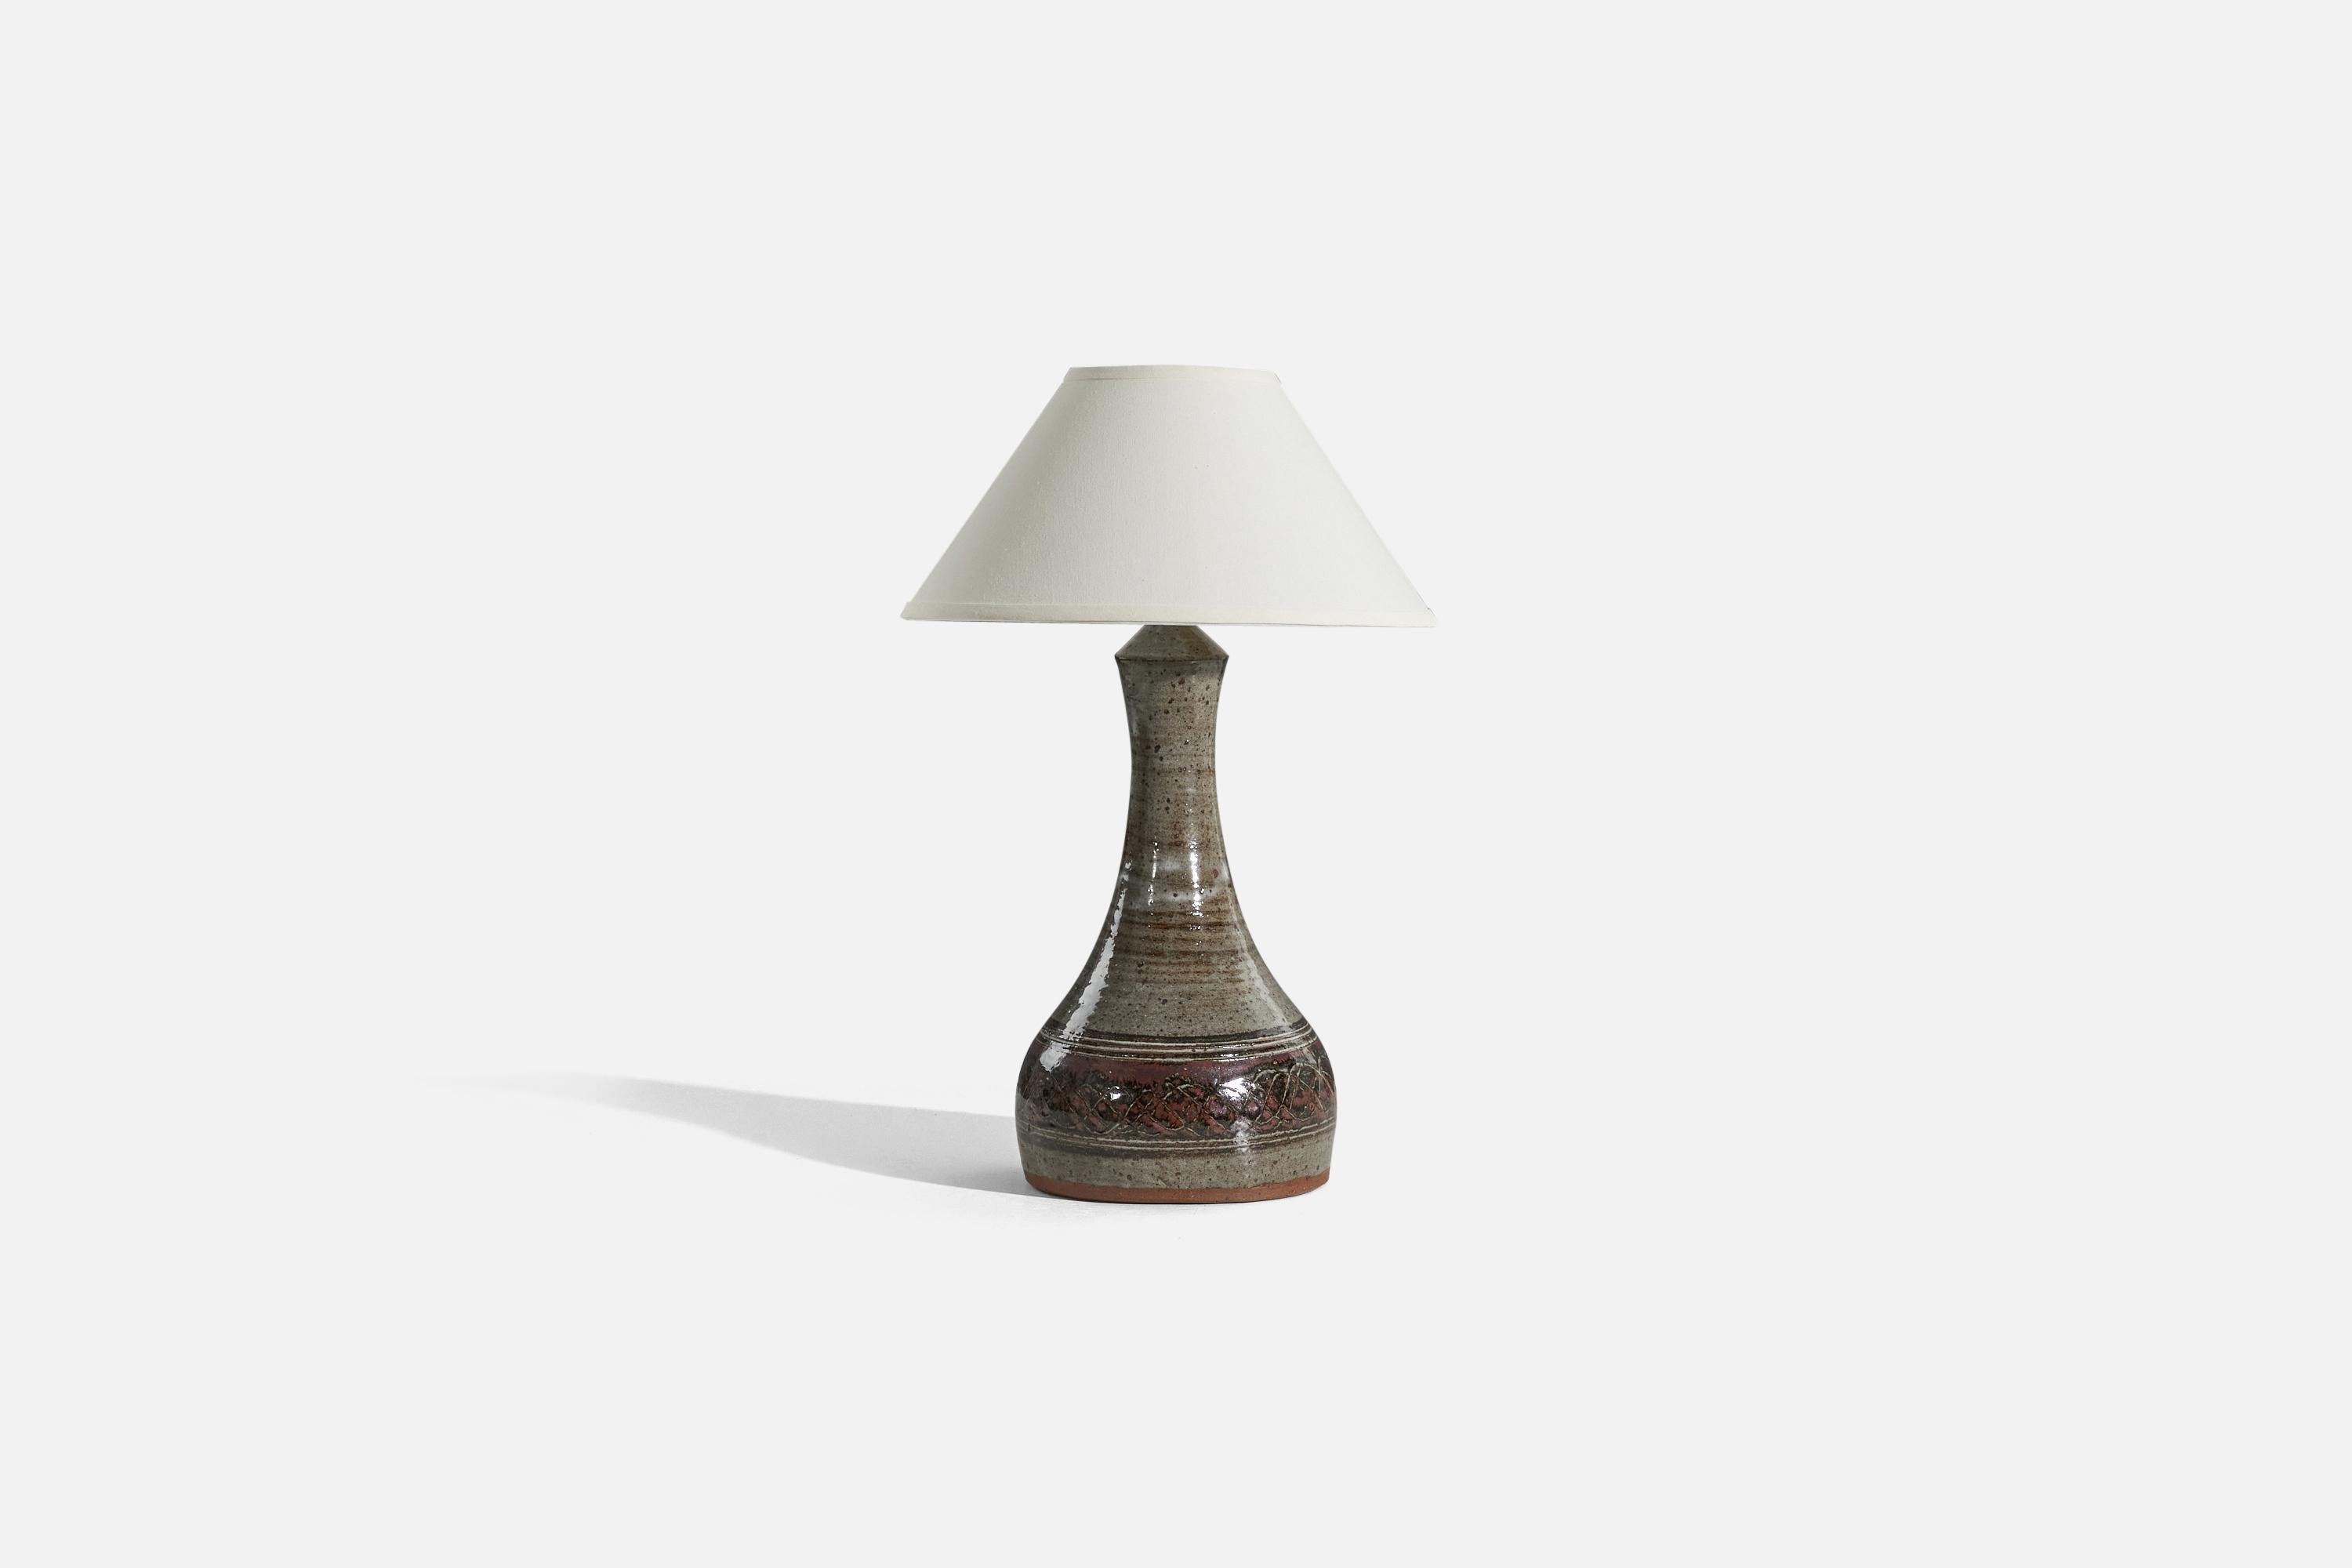 Tischlampe aus grauem und braunem, glasiertem Steingut, entworfen und hergestellt von Helle Allpass, Dänemark, 1960er Jahre.

Verkauft ohne Lampenschirm. 
Abmessungen der Lampe (Zoll) : 20,75 x 9 x 9 (H x B x T)
Abmessungen des Schirms (Zoll) :